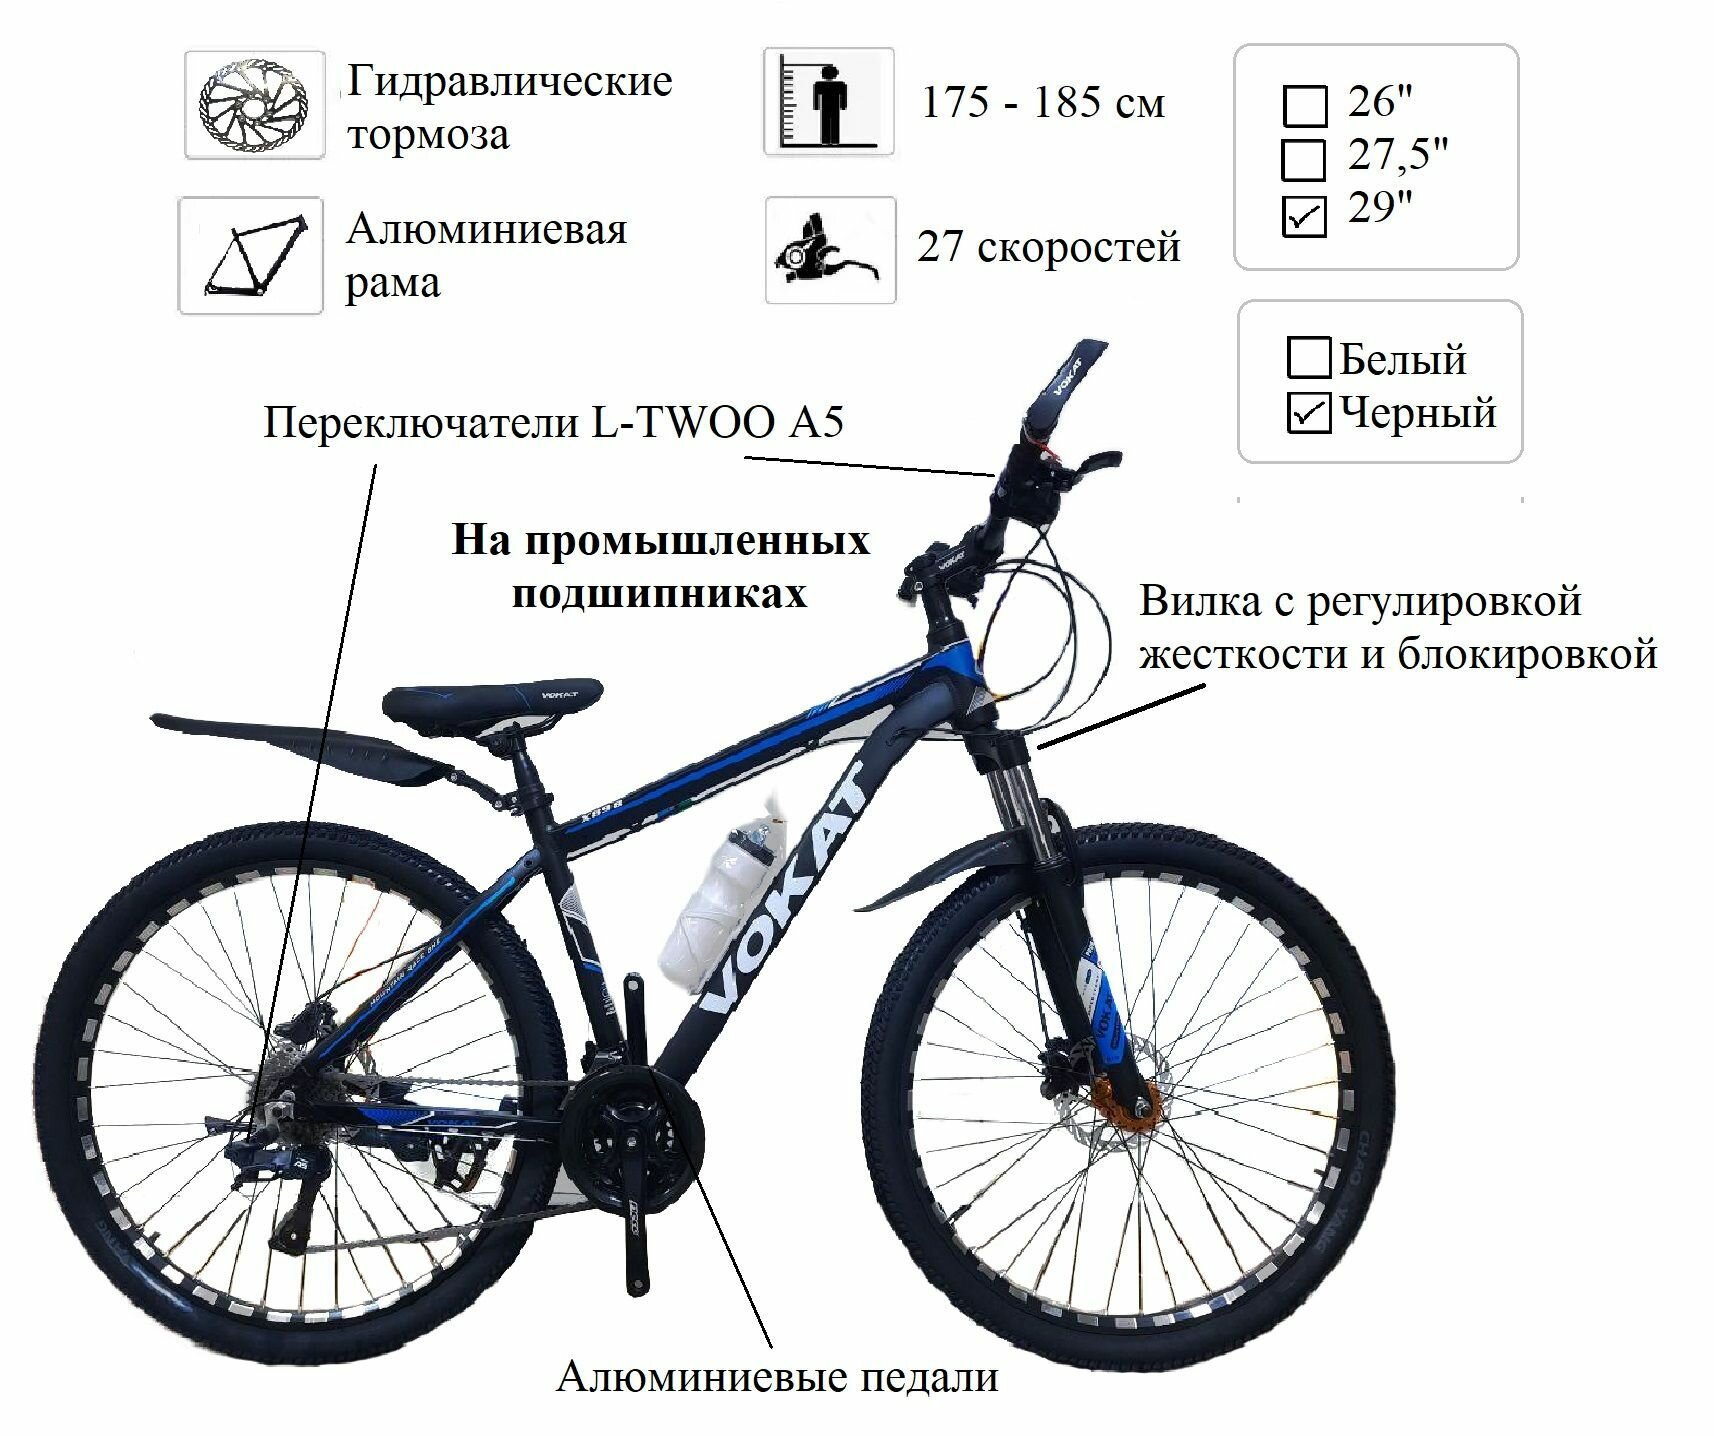 Велосипед 29" Алюминиевый гидравлические тормоза VOKAT